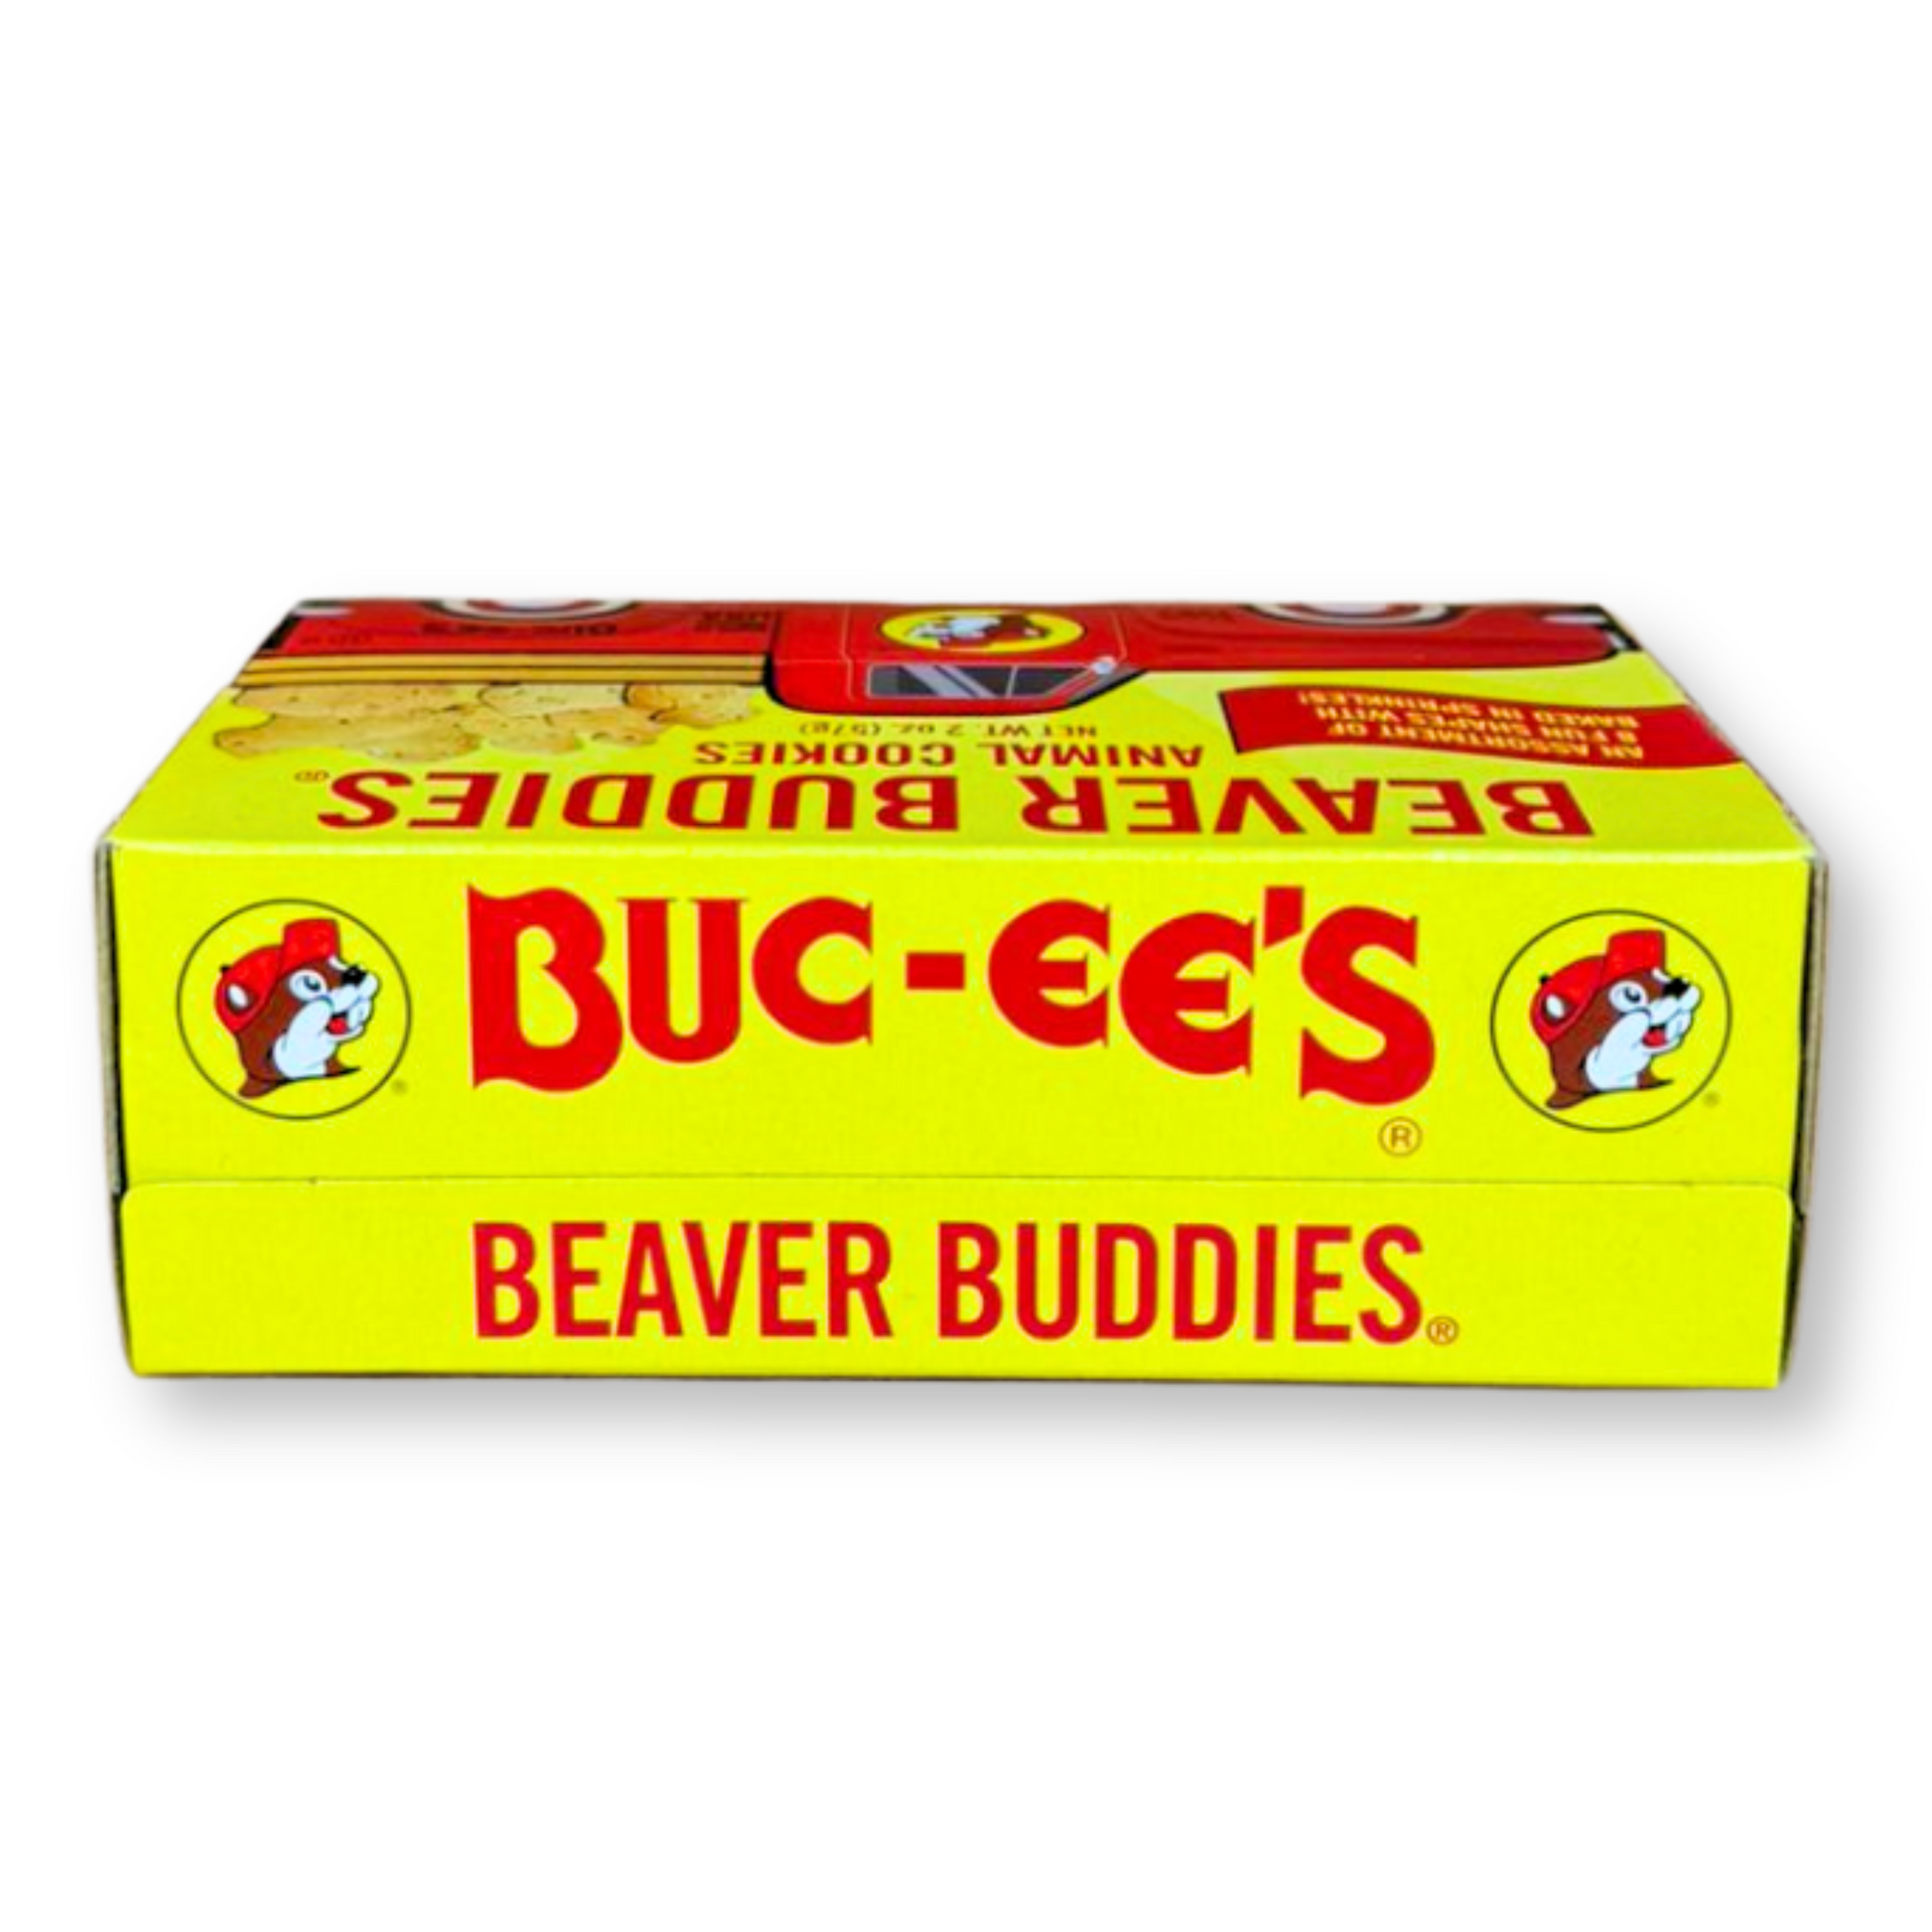 Buc-ee's Beaver Buddies Animal Cookies 6-Pack buc ees buc ee's bucees buccees buc-ees